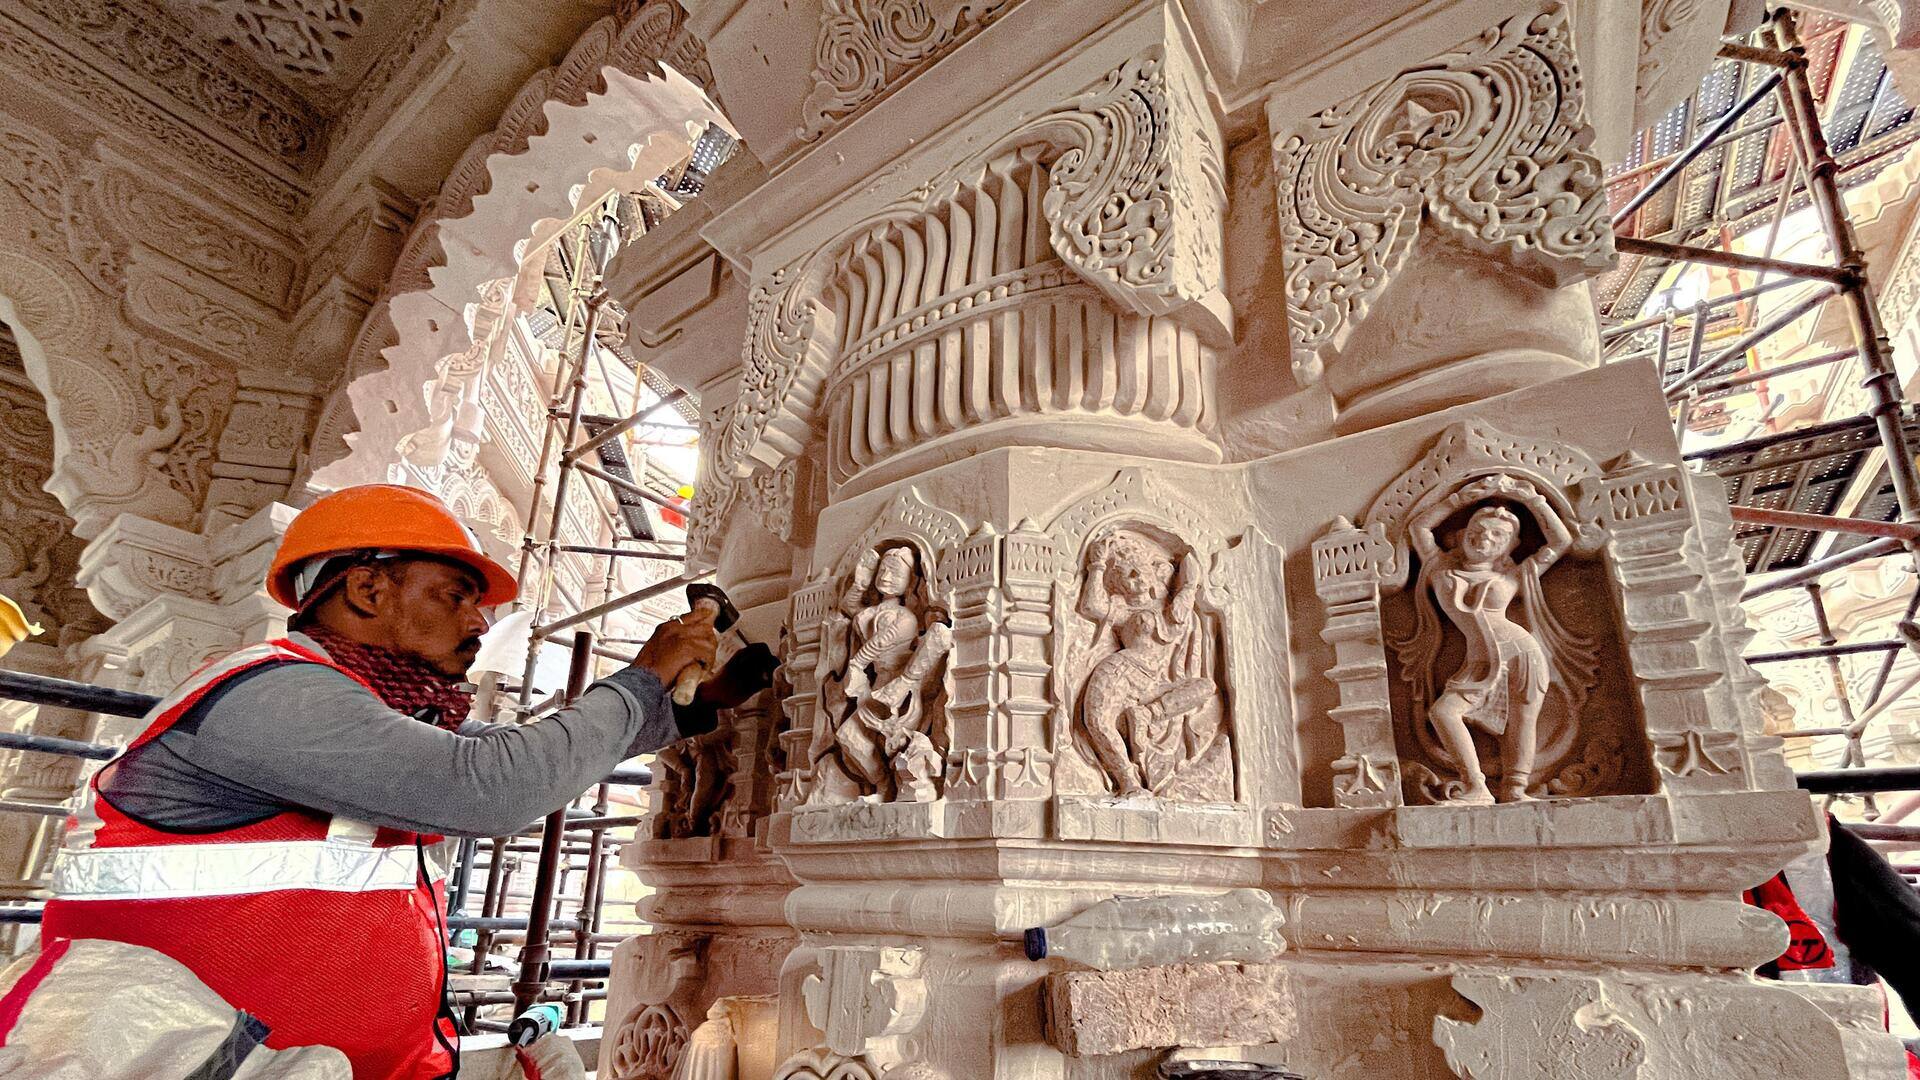 वीडियो: अयोध्या के राम मंदिर के निर्माण की झलकियां, खंभों पर मूर्ति तराशते दिखे कारीगर